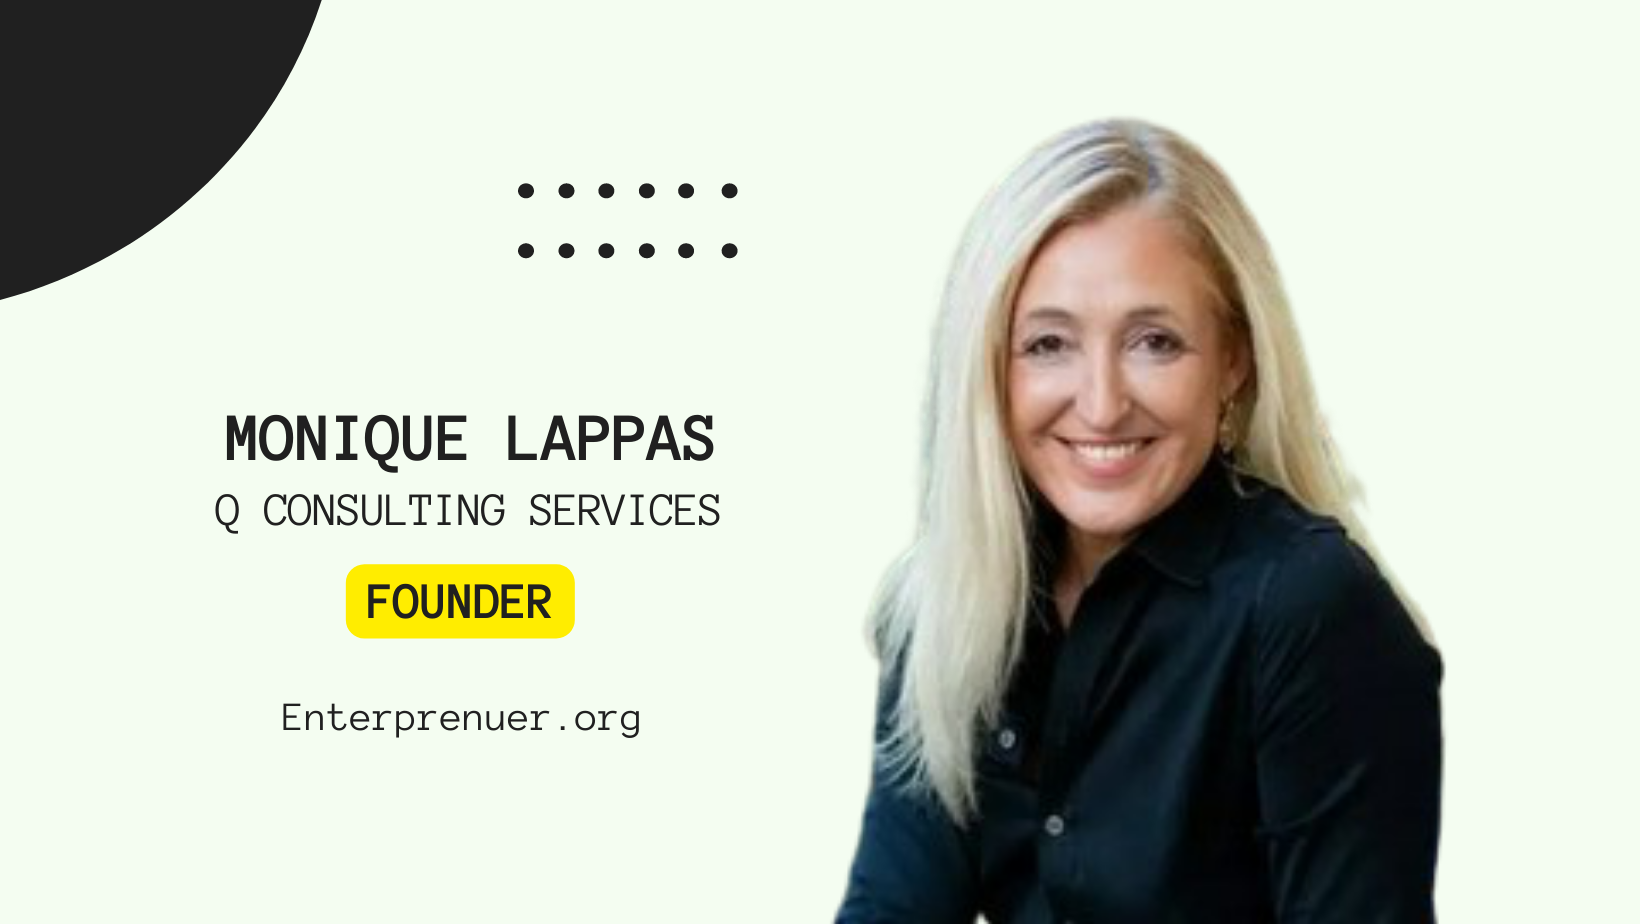 Monique Lappas Founder of Q Consulting Services